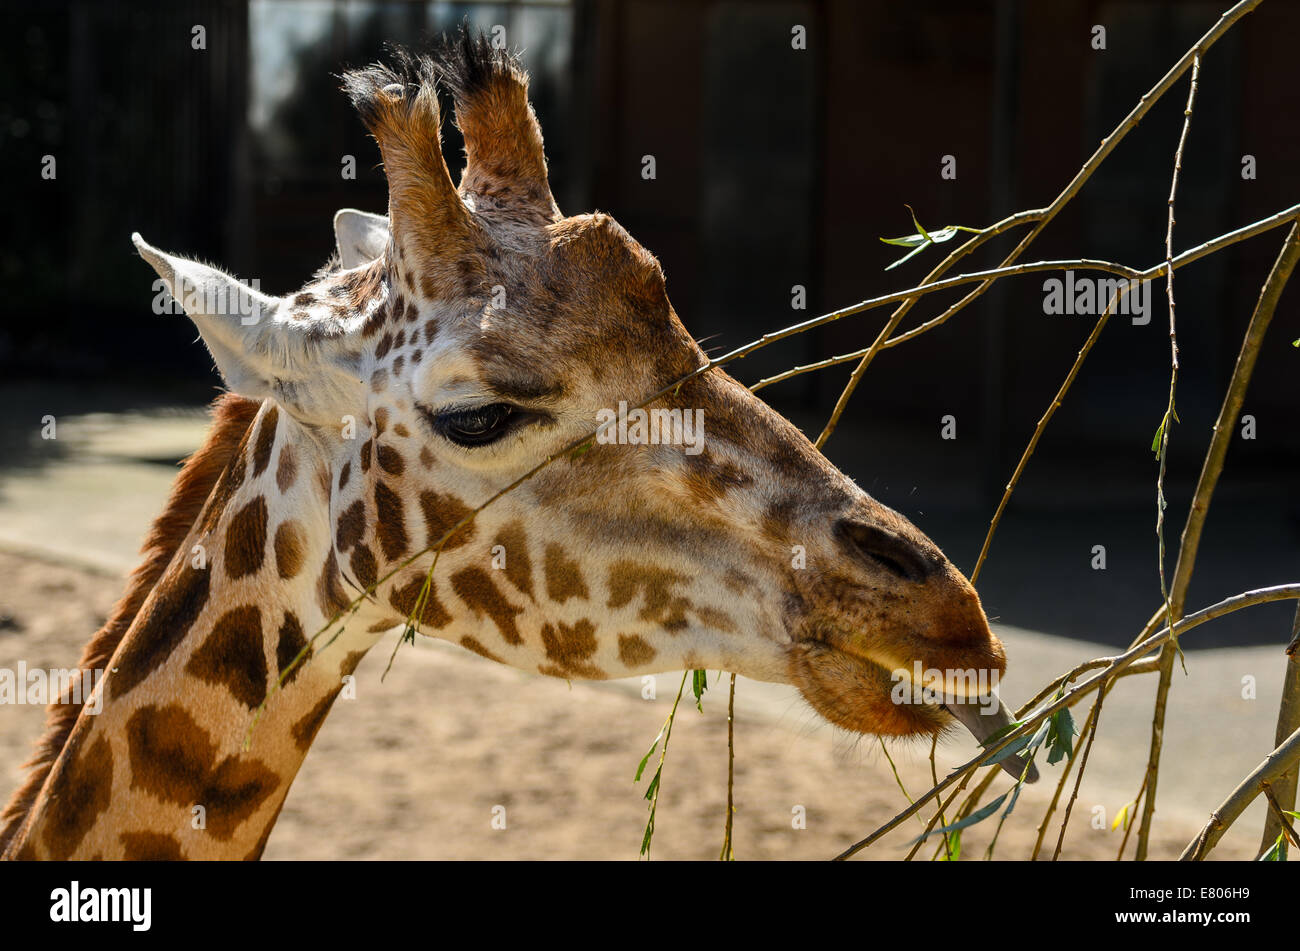 Molto carino il colpo di questo giraafe godendo di un rapido spuntino pomeridiano nel giardino zoologico Foto Stock